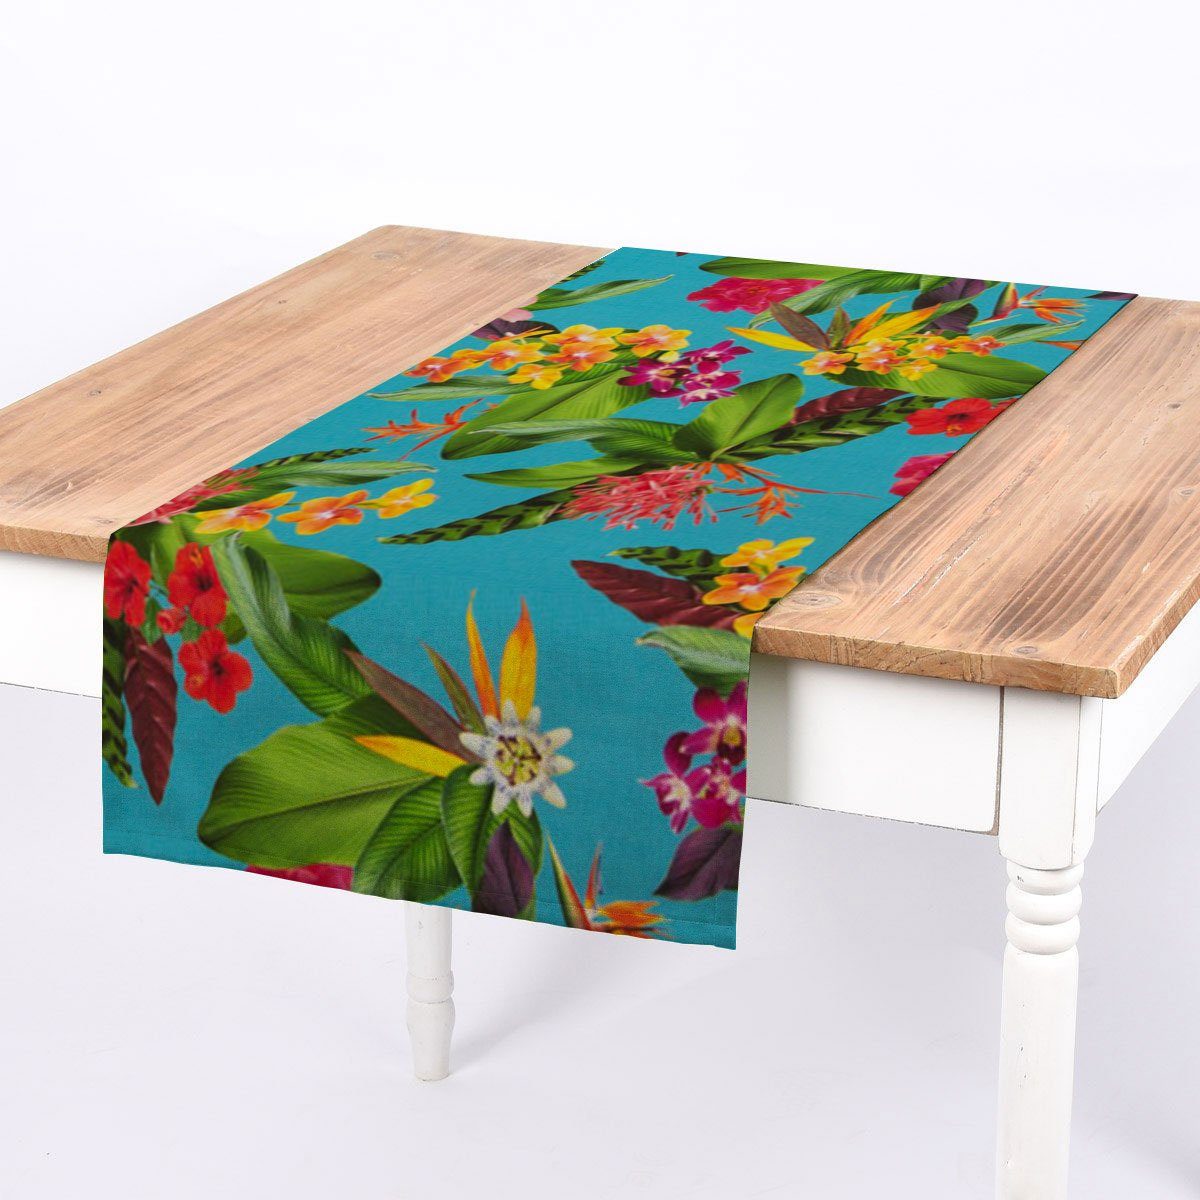 SCHÖNER LEBEN. Tischläufer SCHÖNER LEBEN. Tischläufer Outdoor Exotik Blüten türkis mulitcolor, handmade